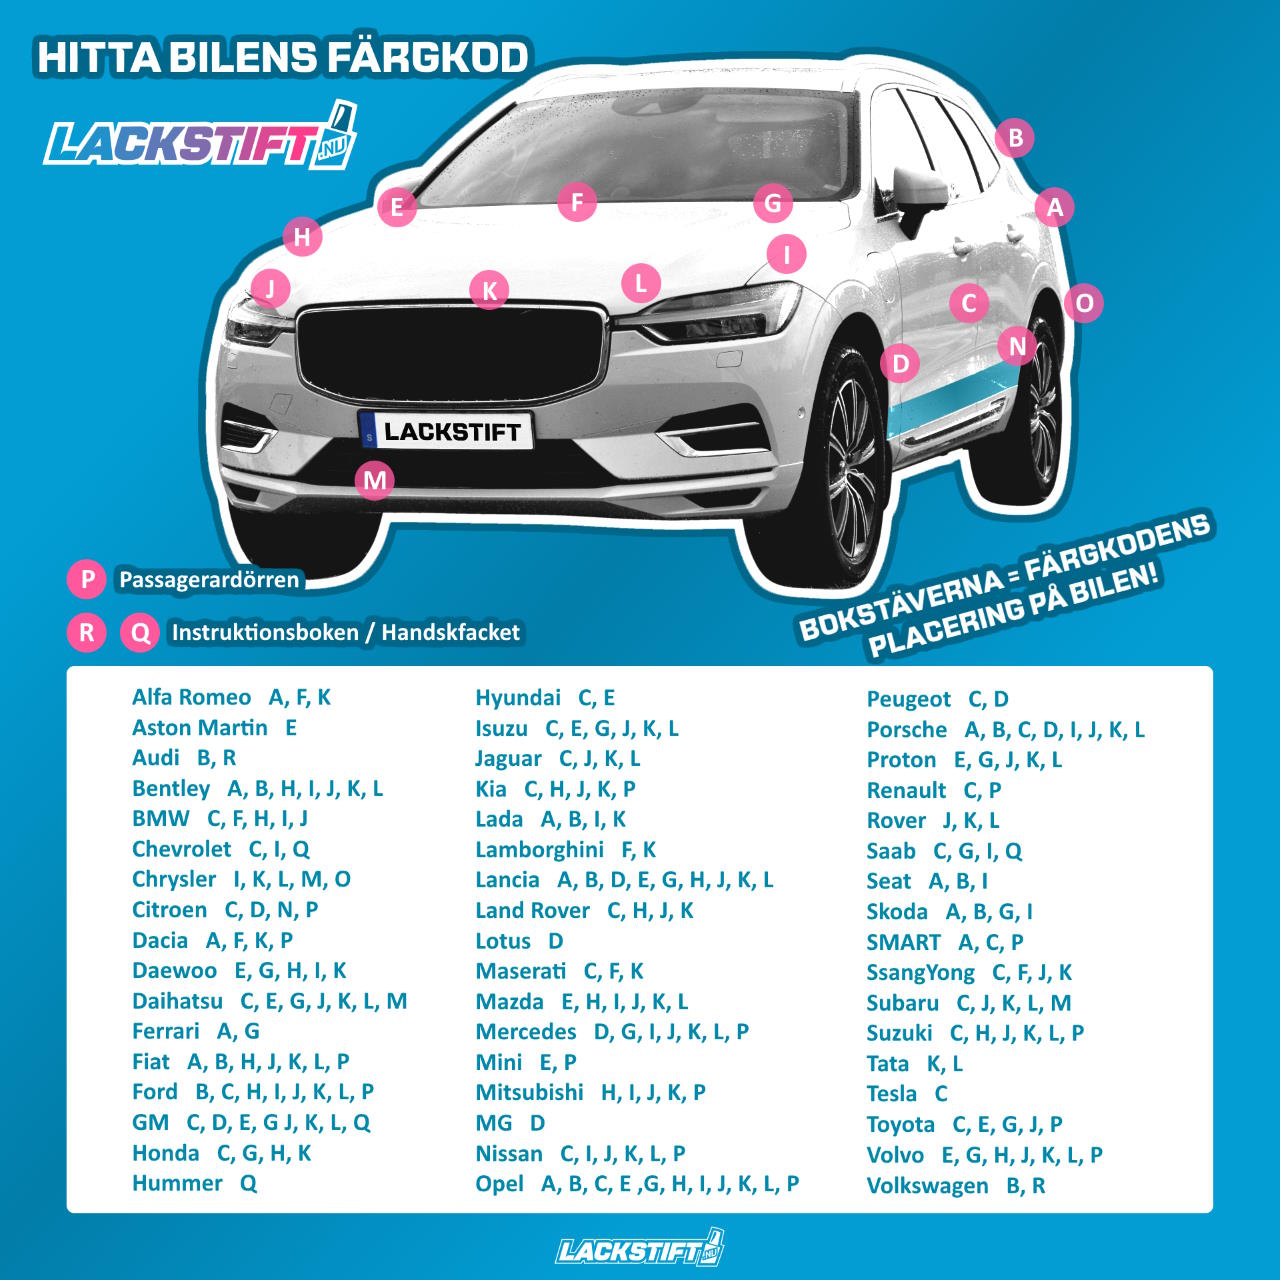 Lokalisera din bils färgkod med denna enkla beskrivande bild!